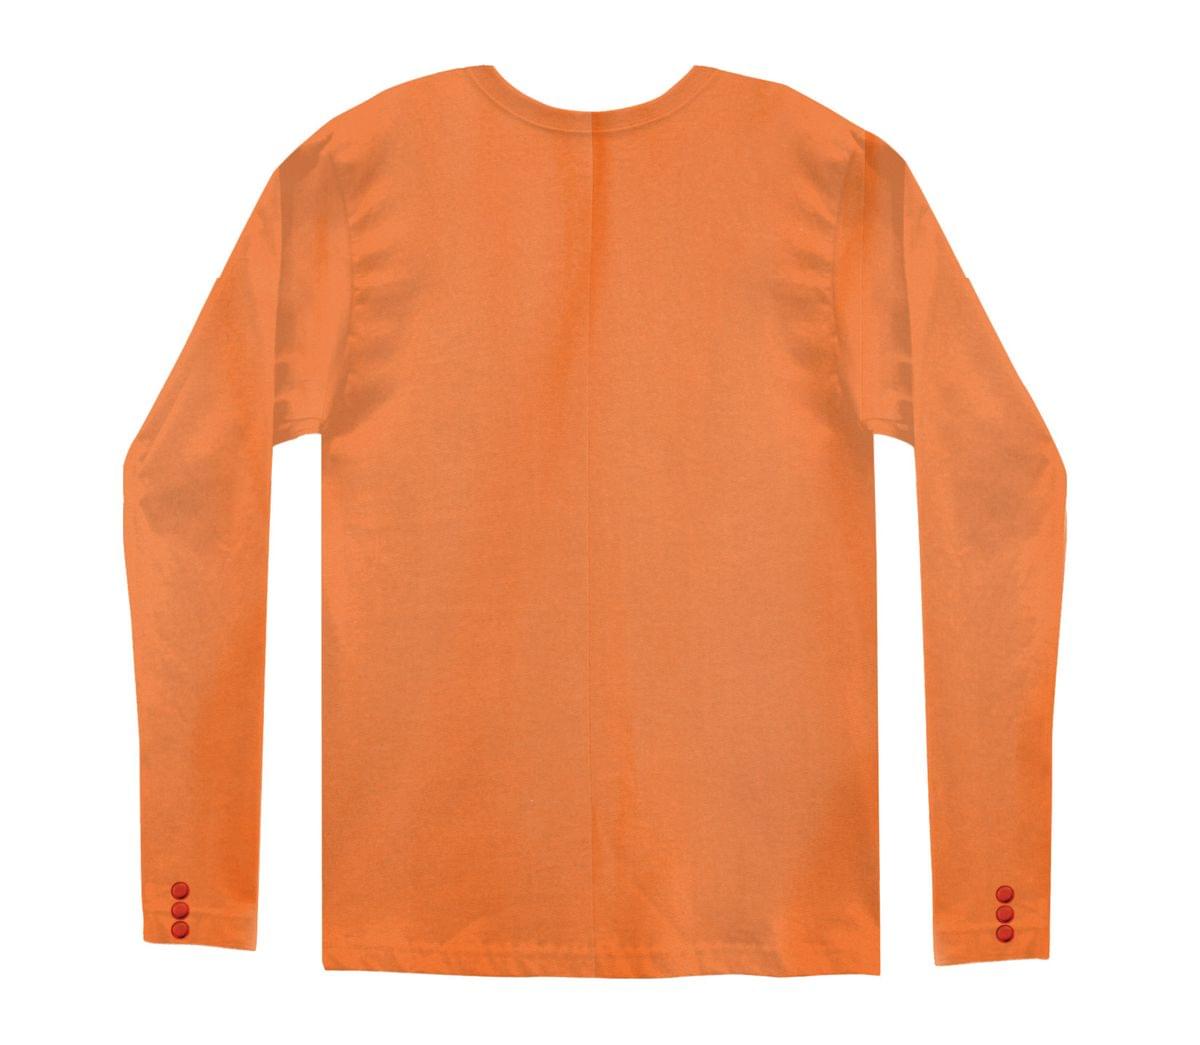 Faux Orange Tuxedo Costume T-Shirt Adult